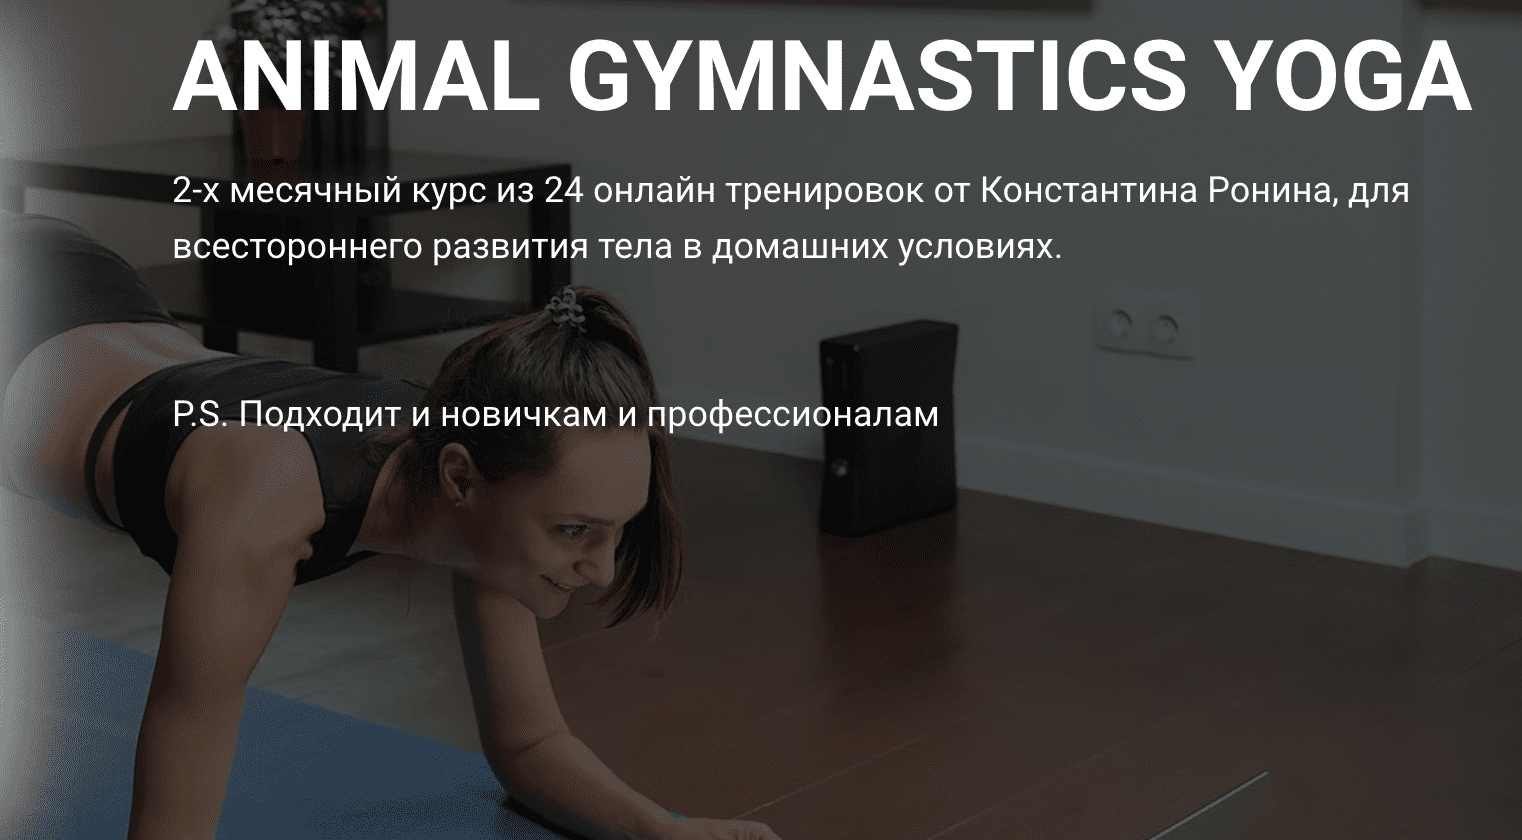 Изображение [Константин Ронин] Animal Gymnastics Yoga (2020) в посте 251368